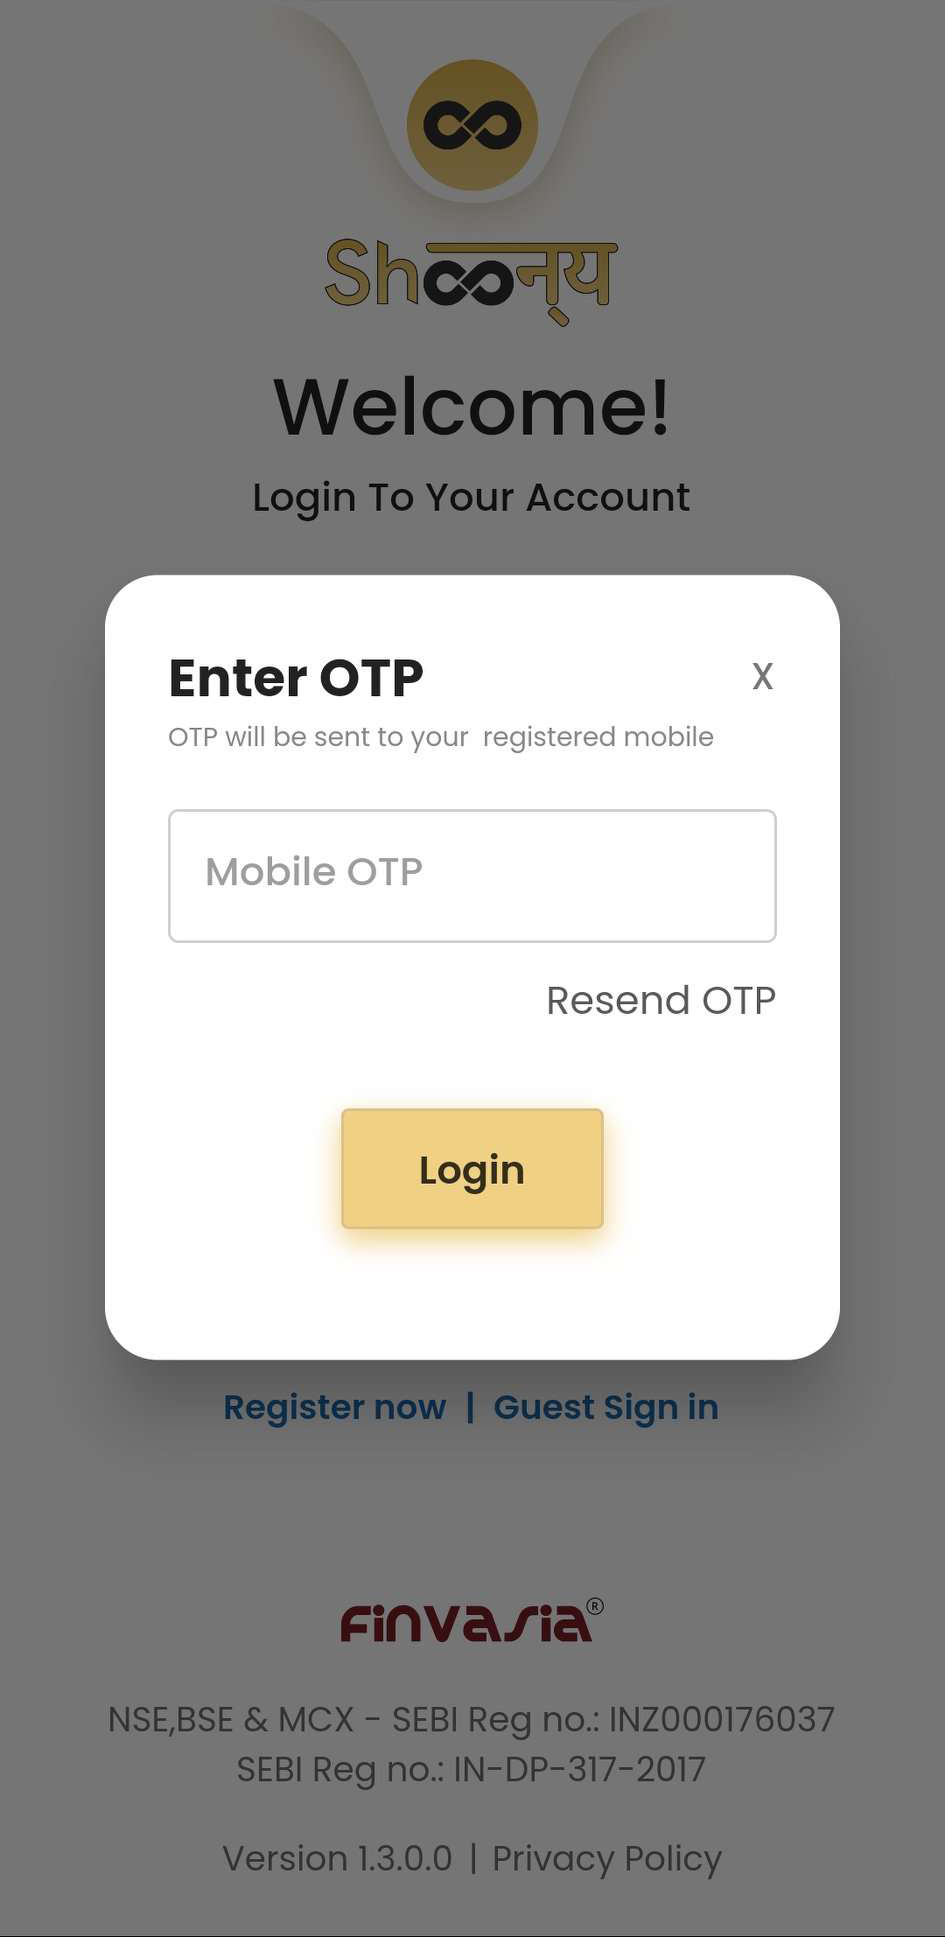 Image 2- OTP sent on Registered Mobile Number 